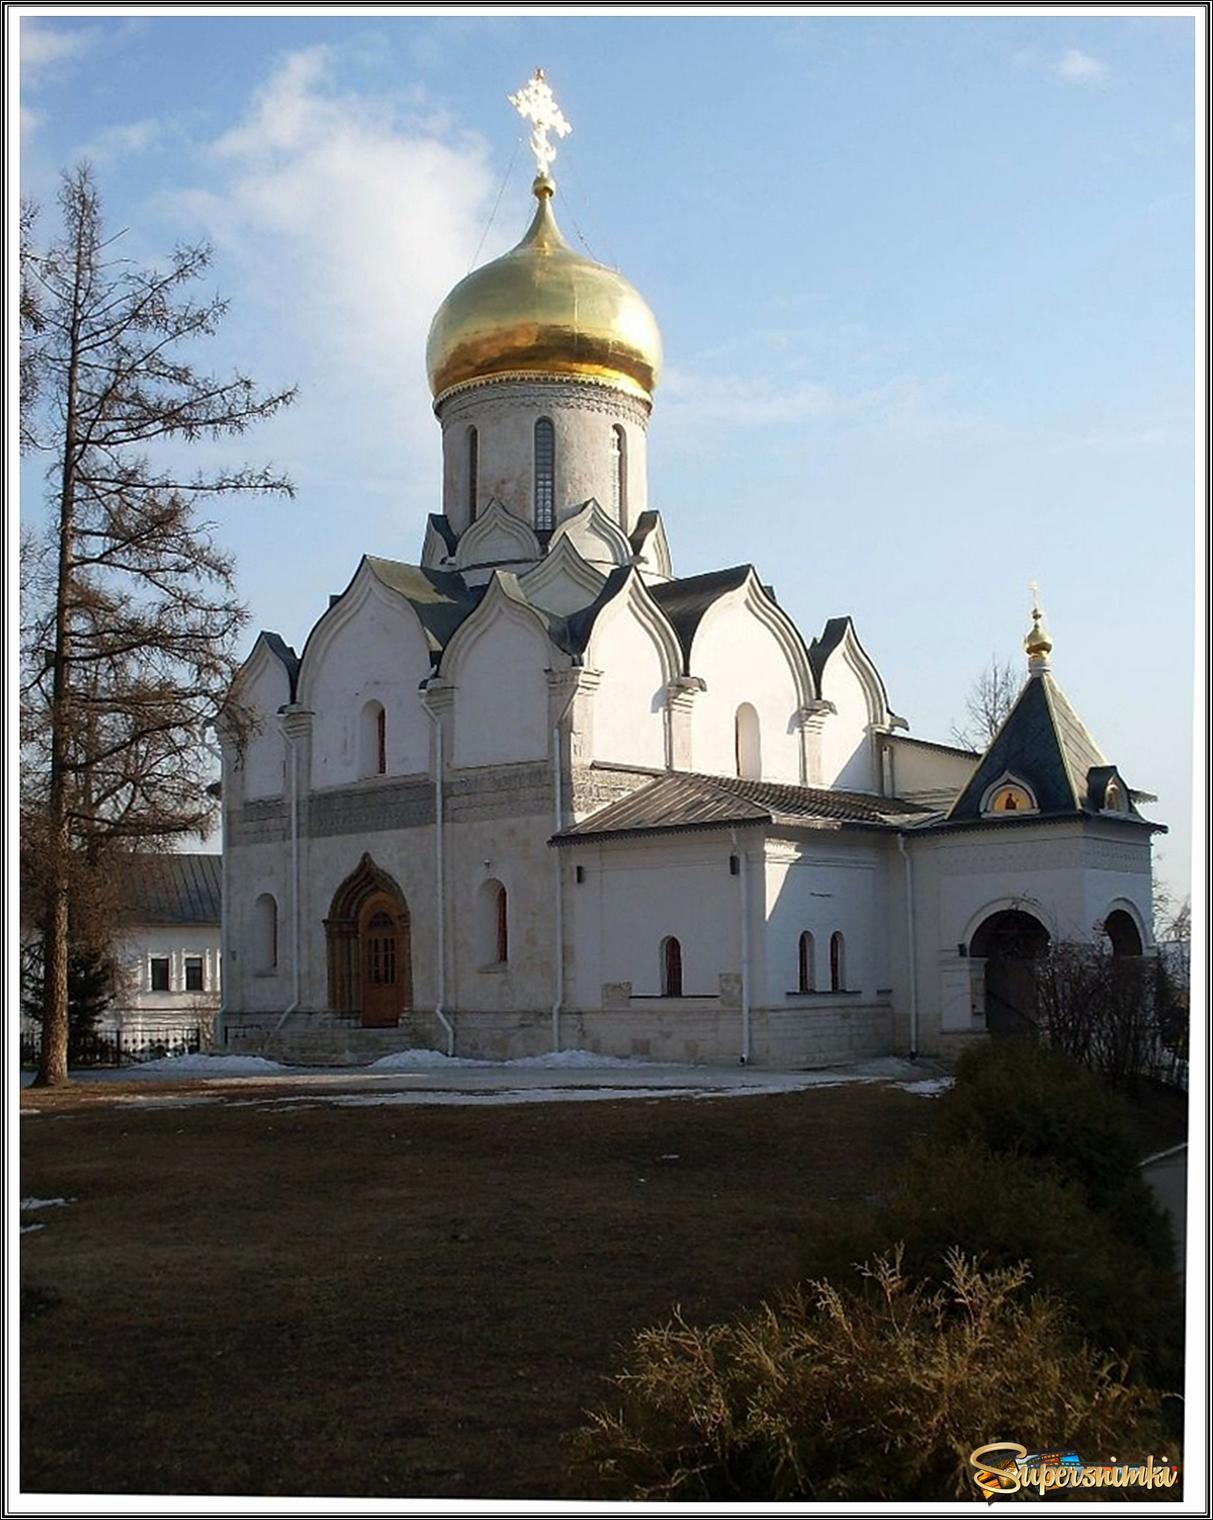 Собор Рождества Пресвятой Богородицы (1405 г ) в Саввино - Сторожевском монастыре г. Звенигород. 